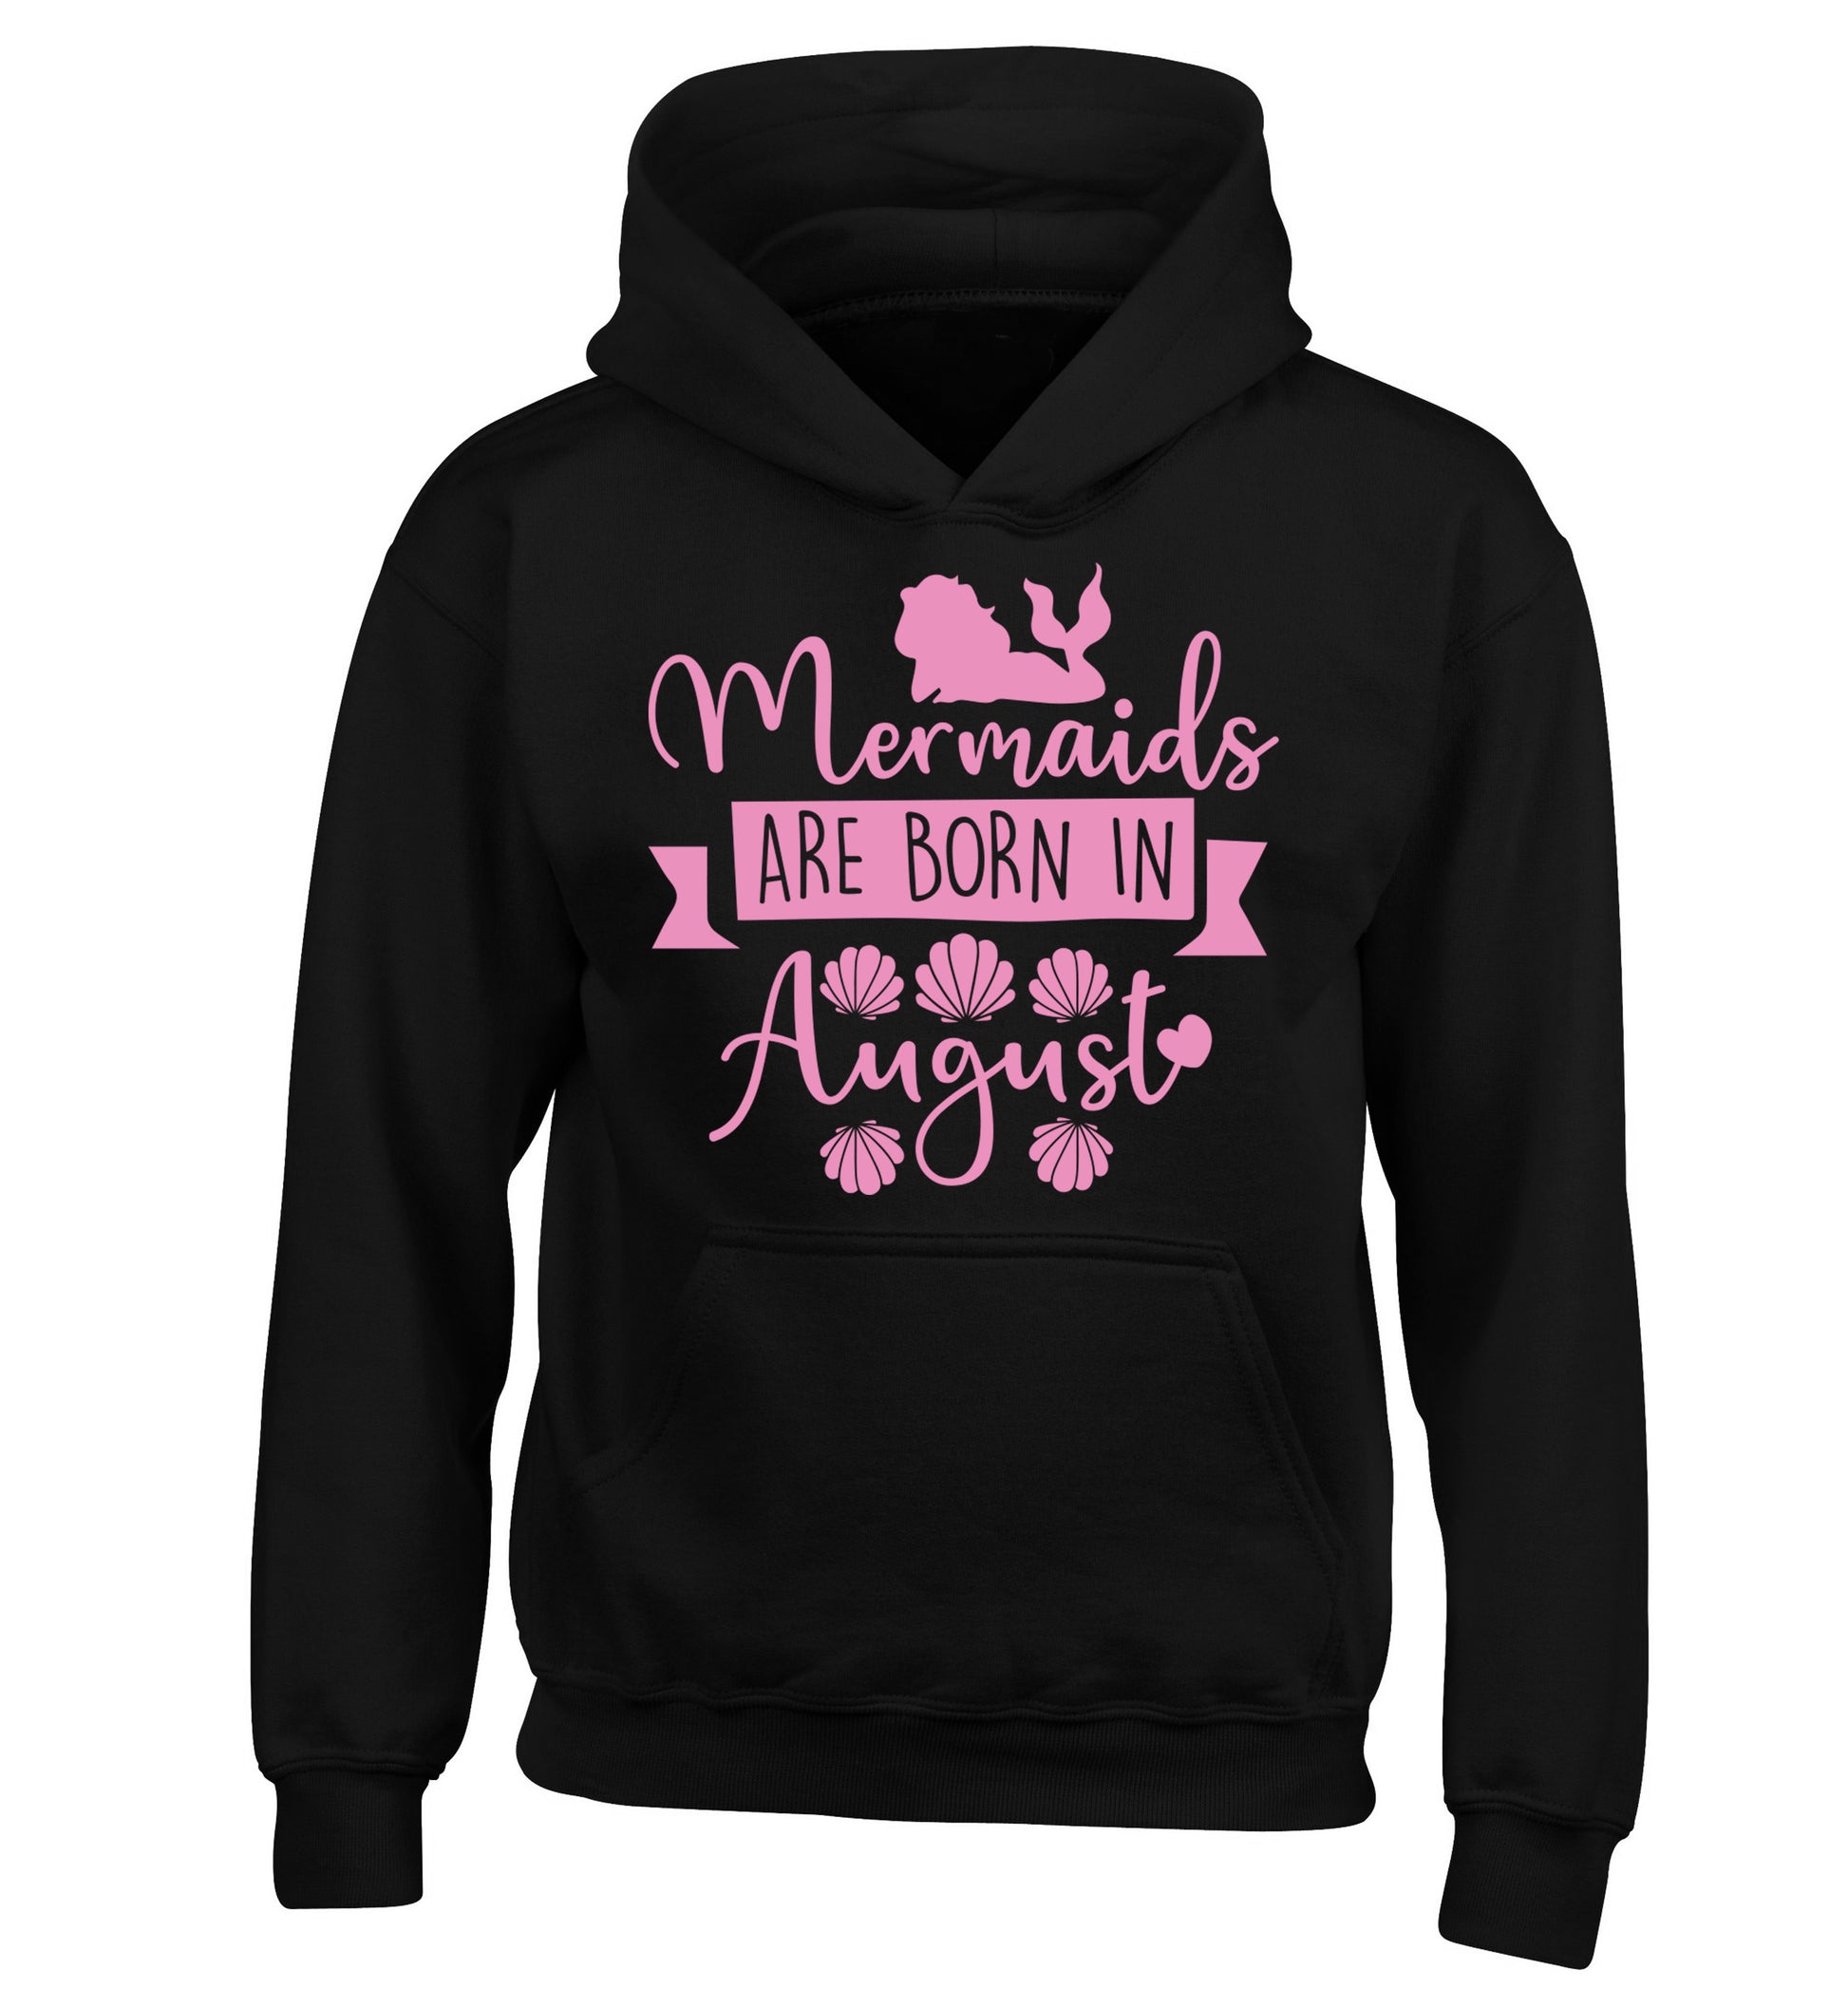 Mermaids are born in August children's black hoodie 12-13 Years